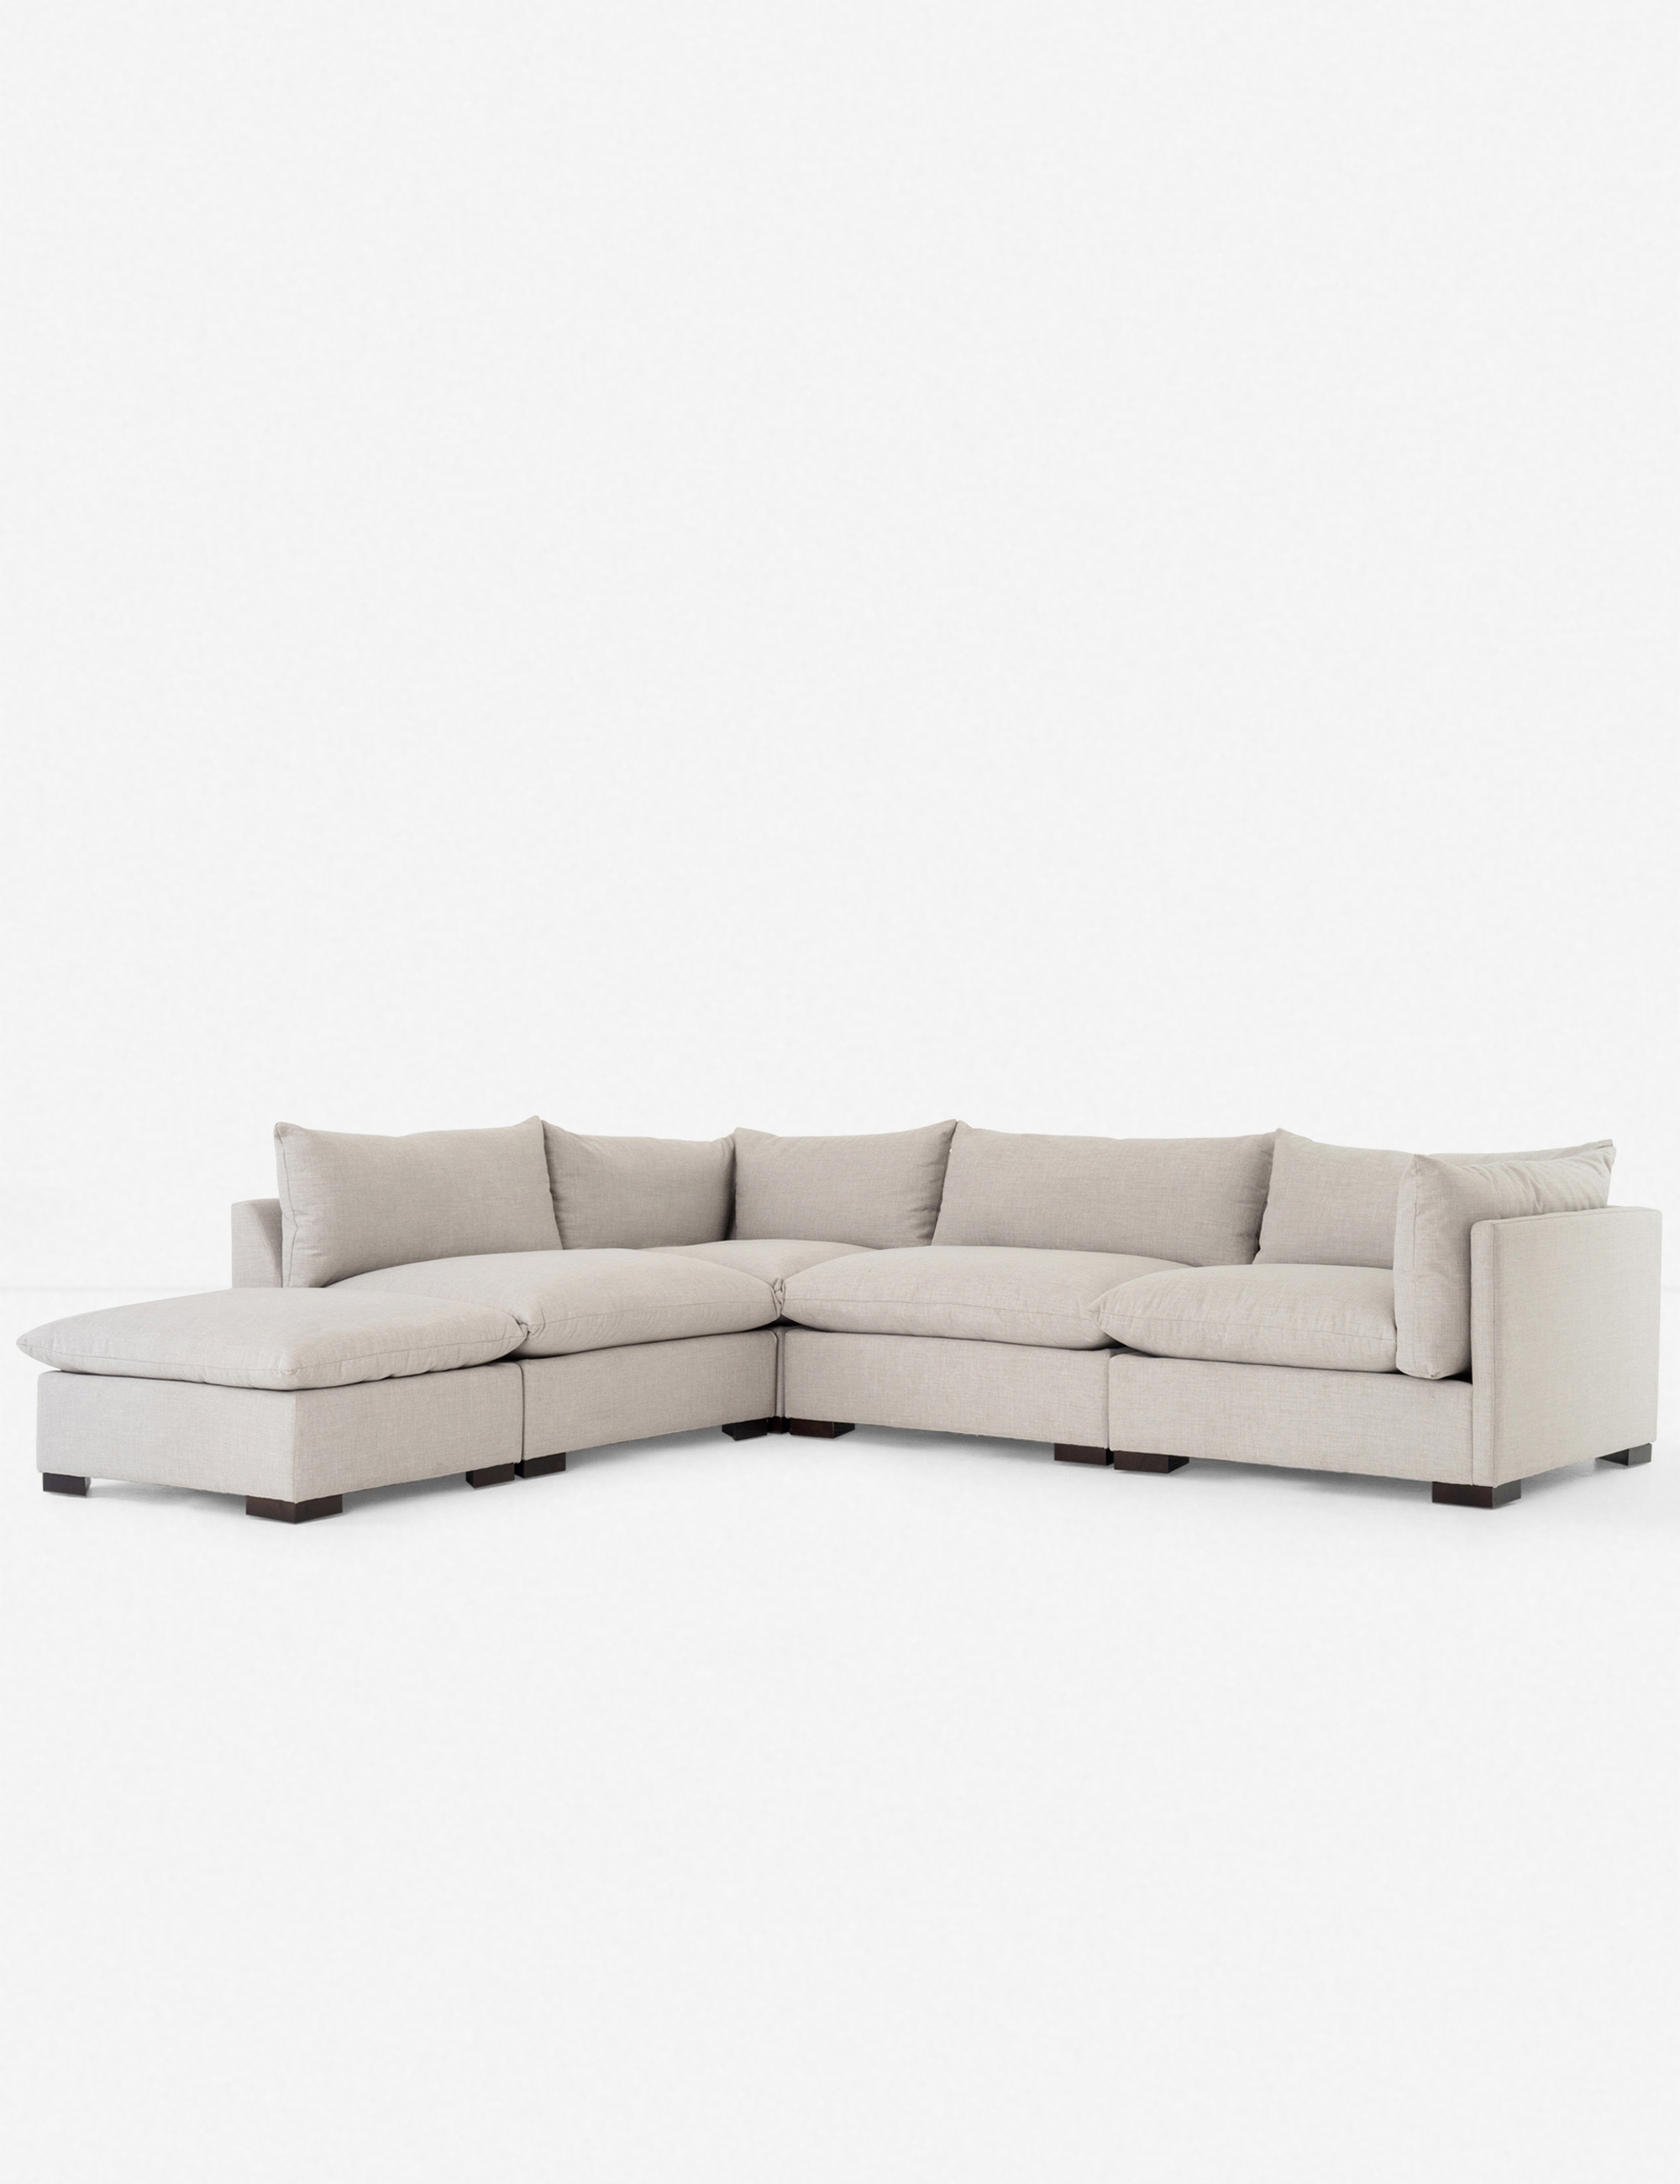 Mitzi Modular Sectional Sofa - Image 1